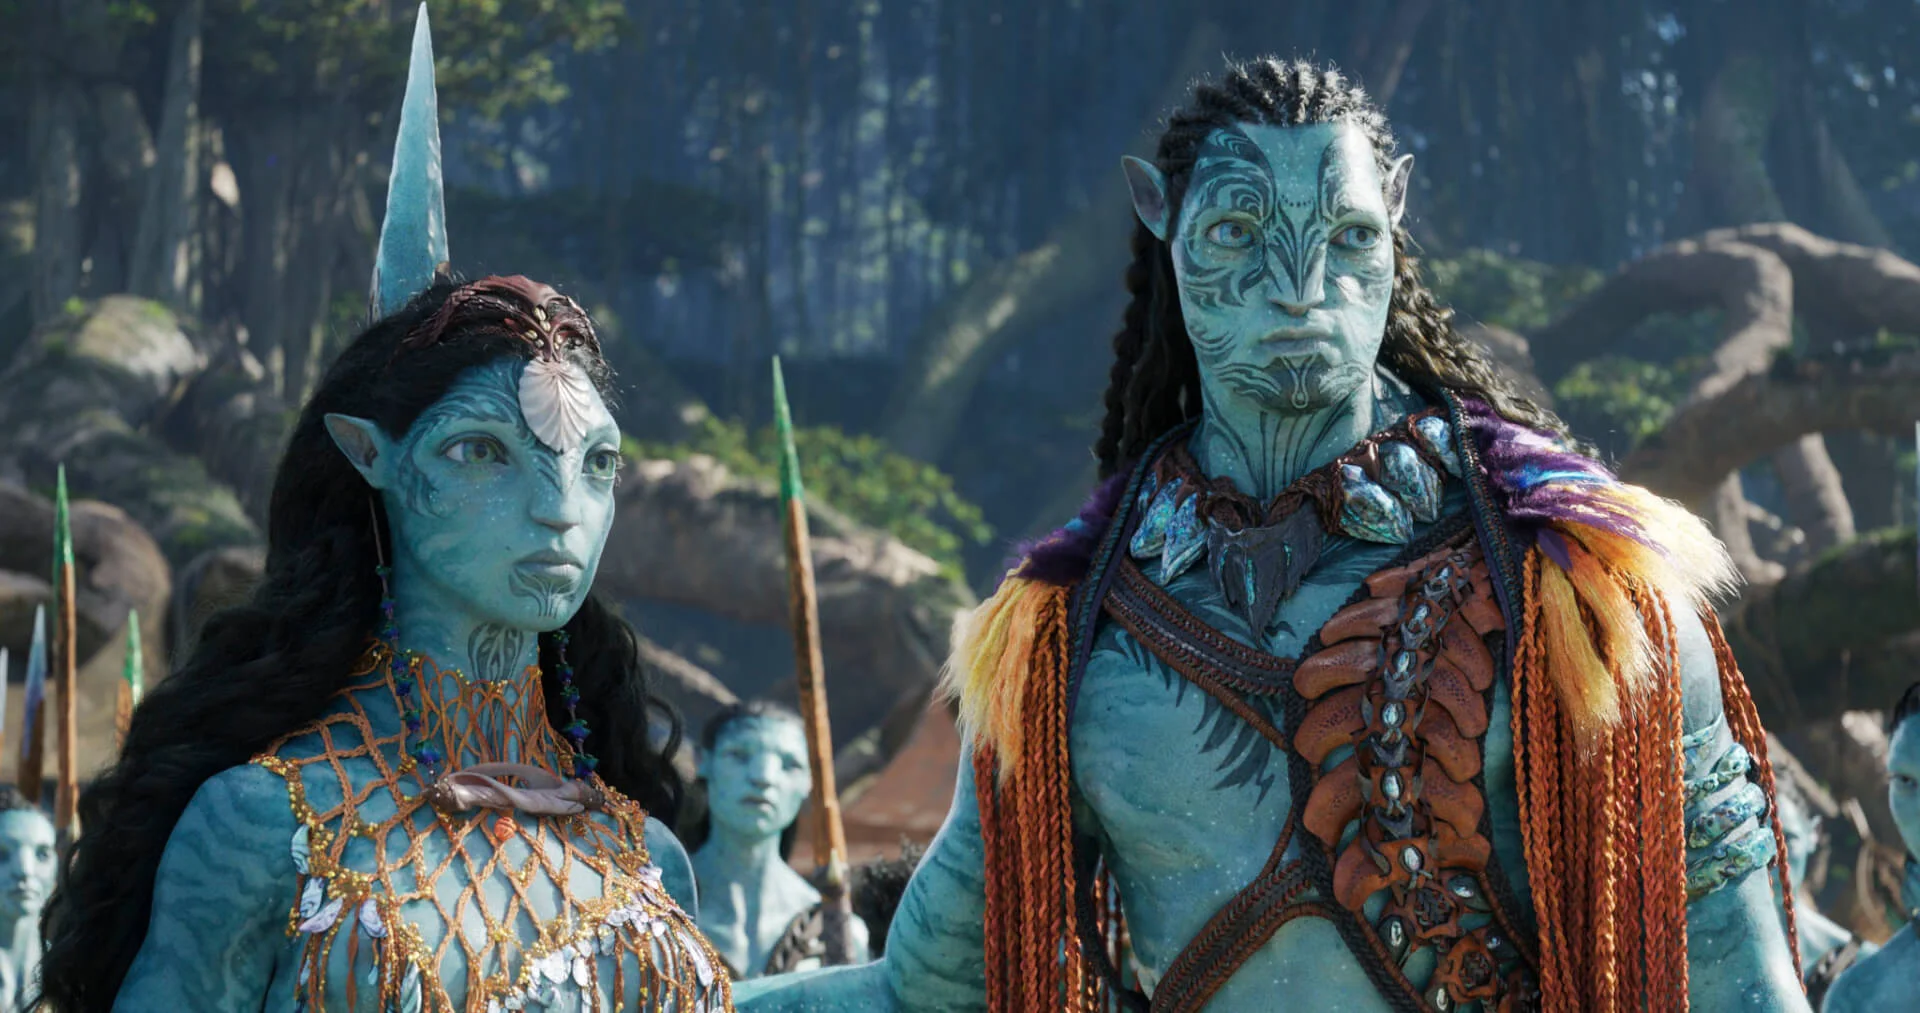 James Cameron az Avatar folytatásait az epizodikus televíziózáshoz hasonlítja: “Ez tényleg egy nagy történet”